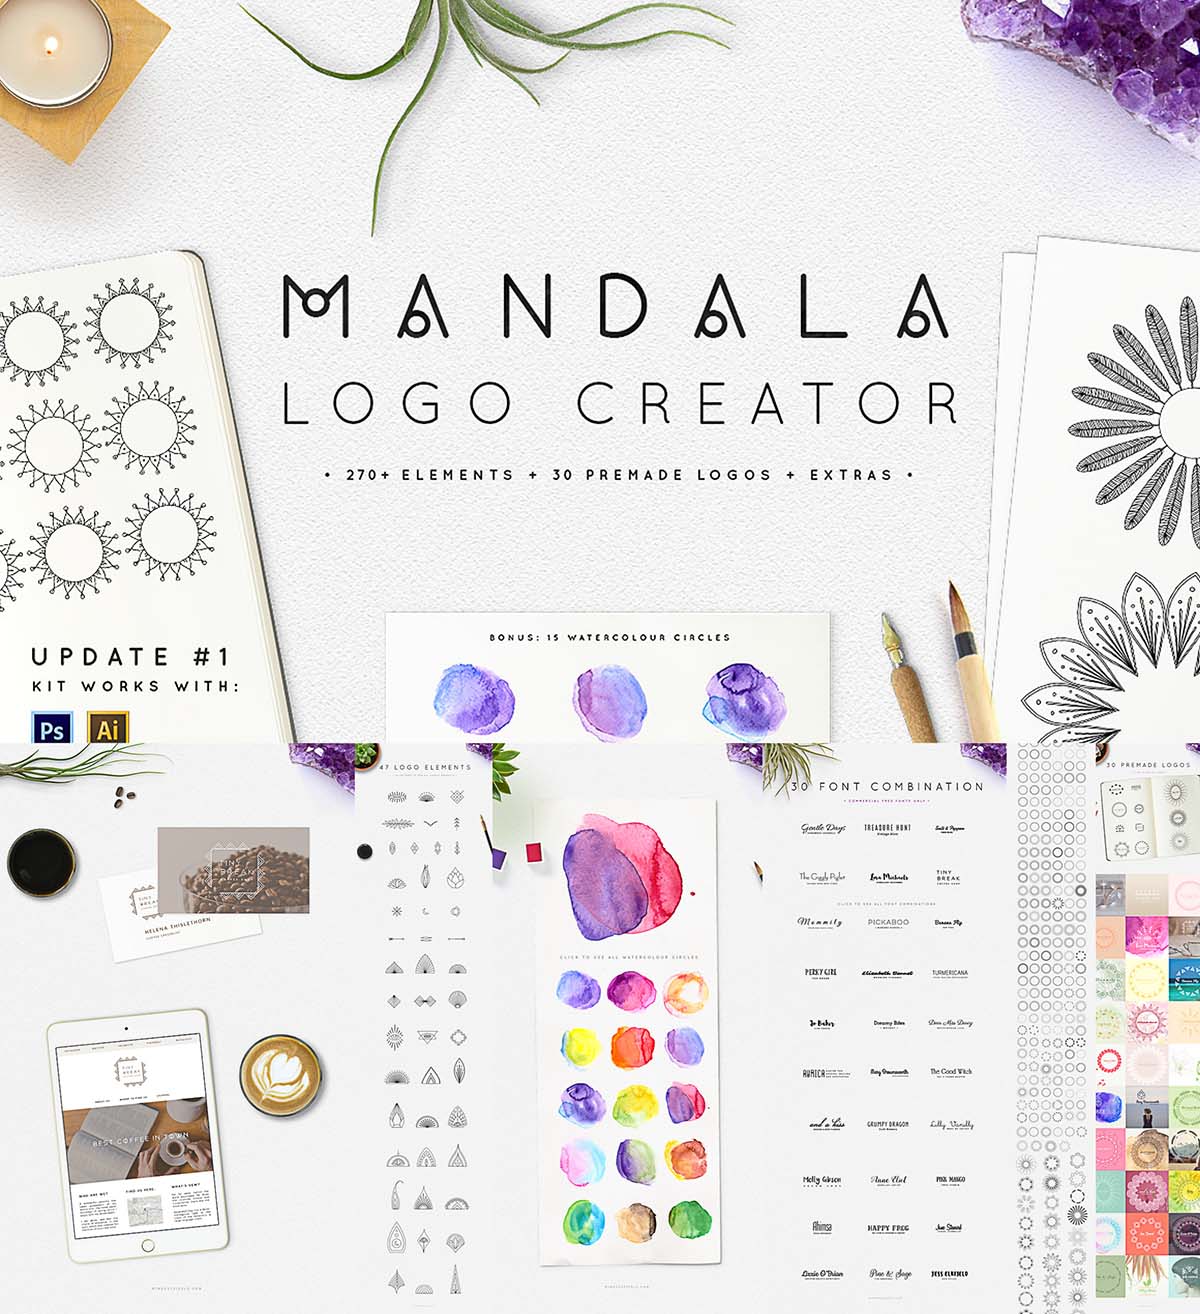 Mandala logo creator